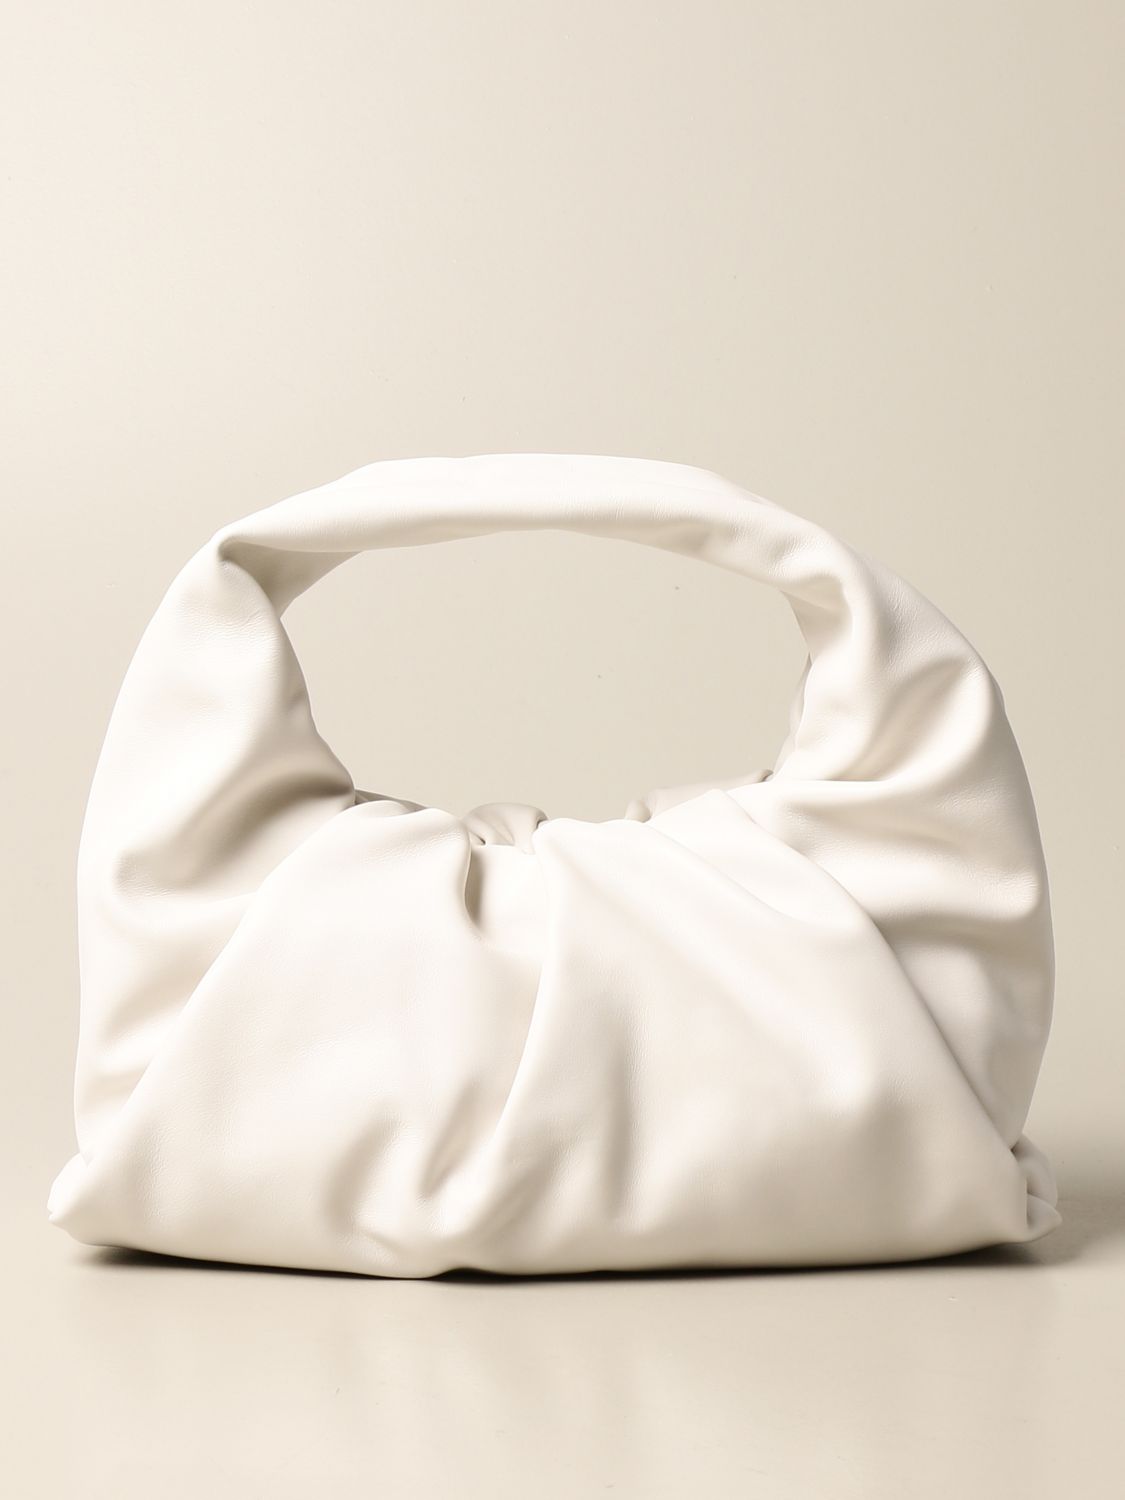 BOTTEGA VENETA: The Shoulder Pouch leather bag - Yellow Cream  Bottega  Veneta shoulder bag 610524 VCP40 online at